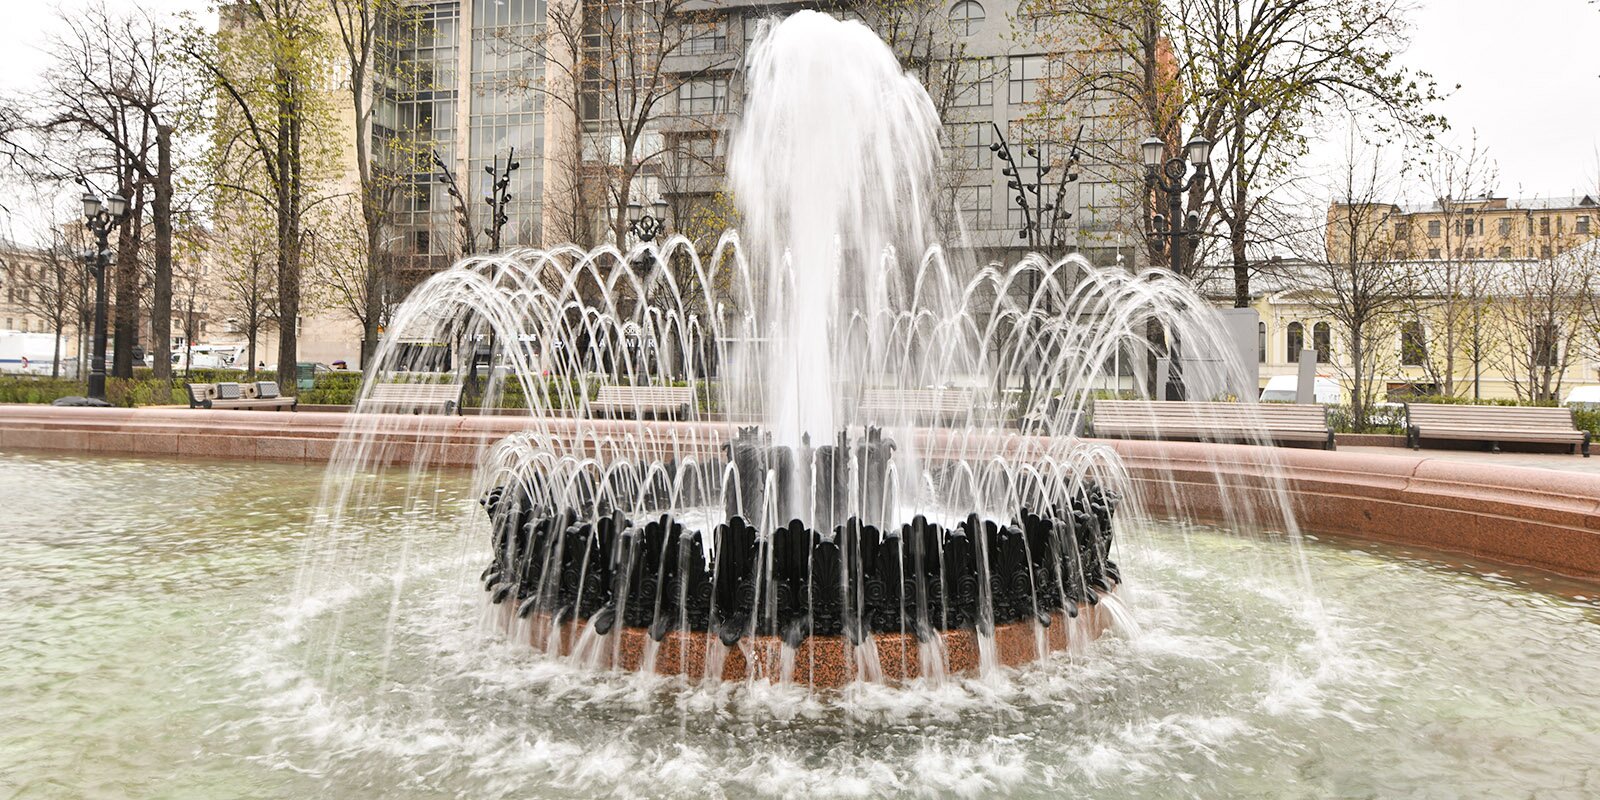 Специалисты приведут в порядок фонтан на Пушкинской площади. Фото: сайт мэра Москвы